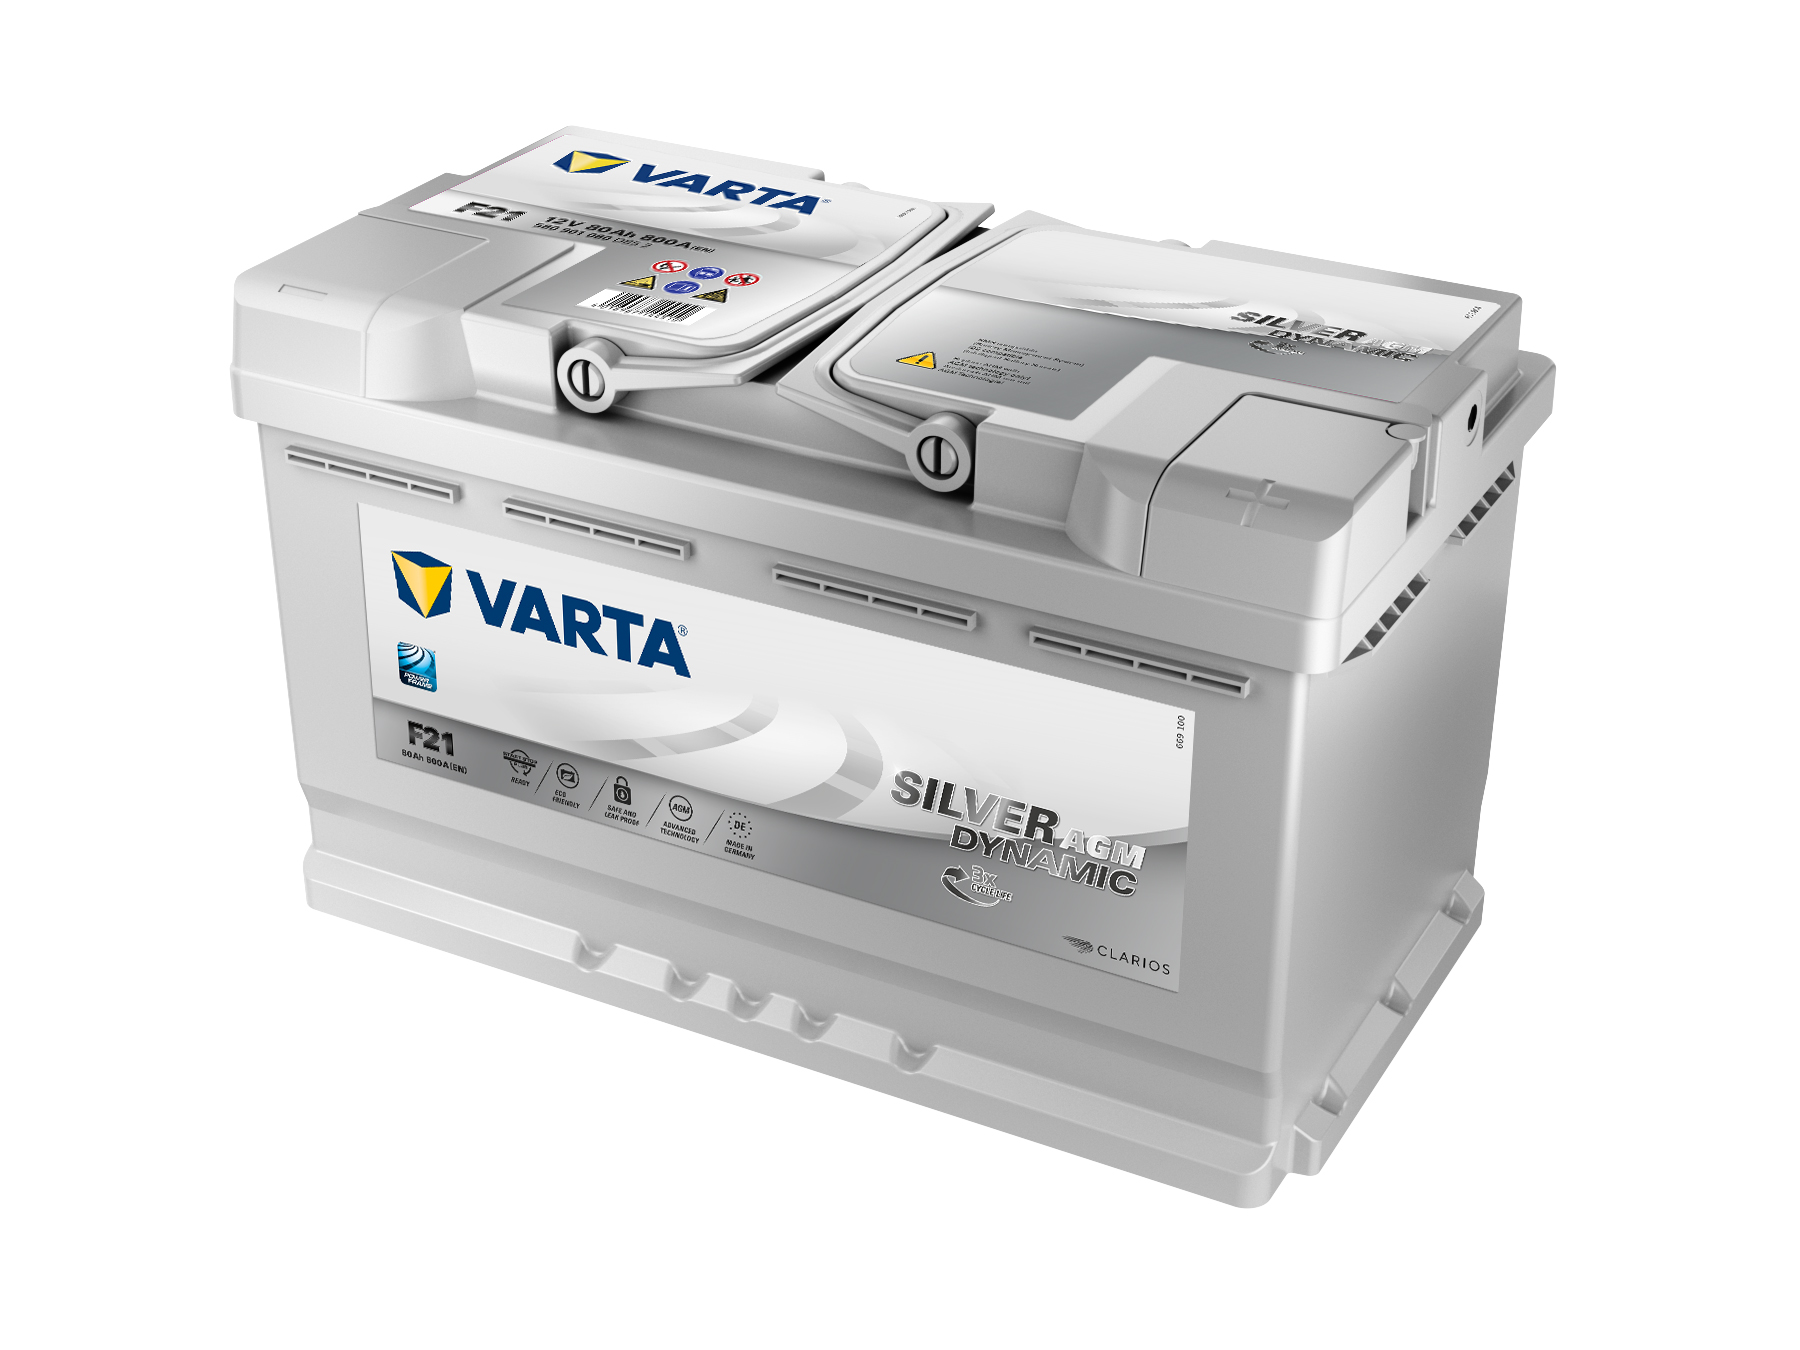 VARTA Silver Dynamic AGM Autobatterie speziell für Start-Stop-Technologie, F21, 580 901 080, 80 Ah, 800 A von Varta